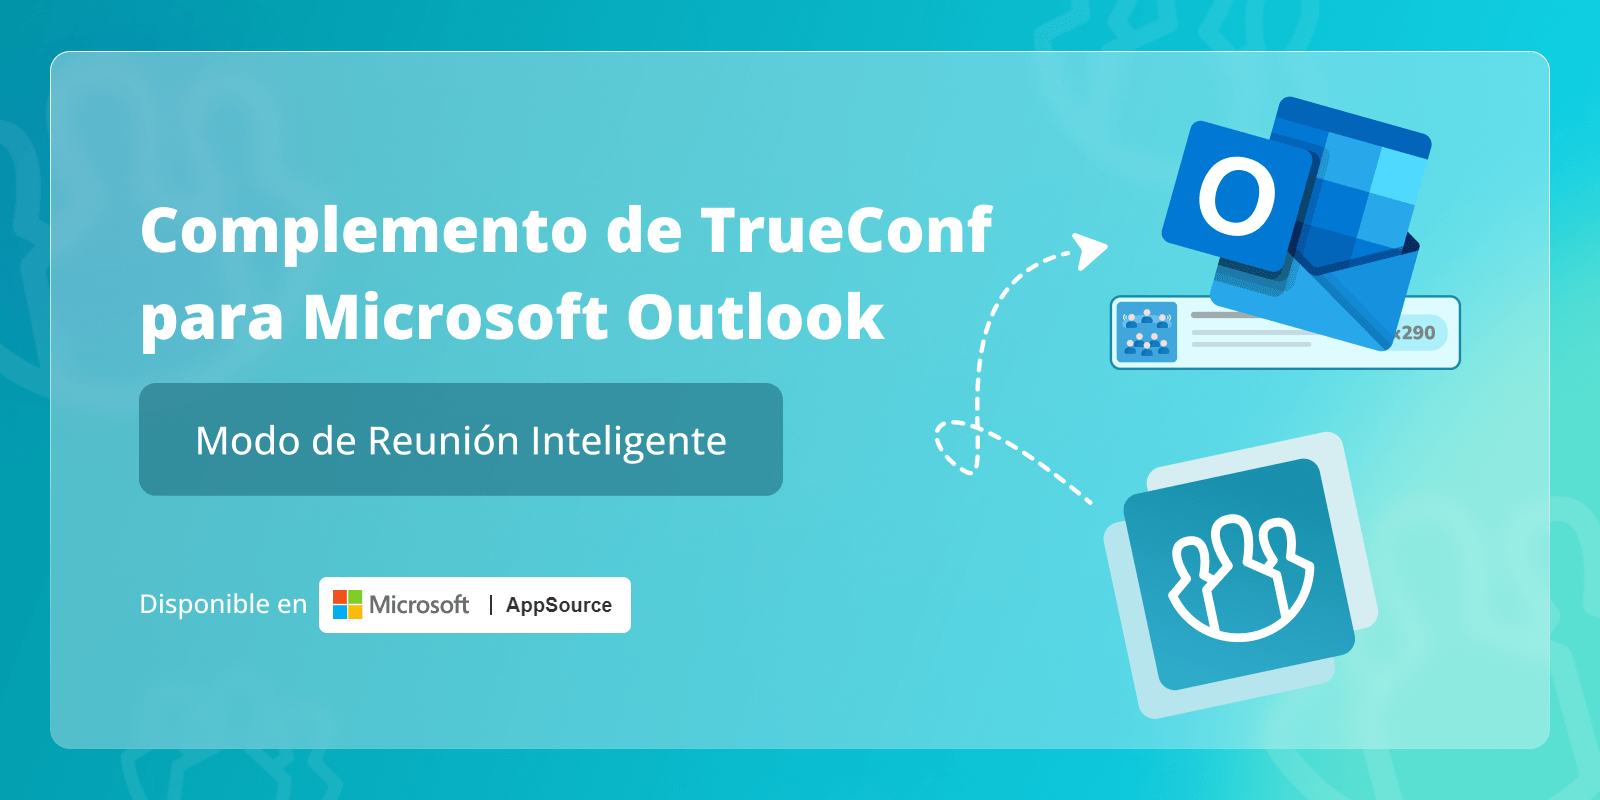 Modo de reunión inteligente en TrueConf para el complemento de Microsoft Outlook 8